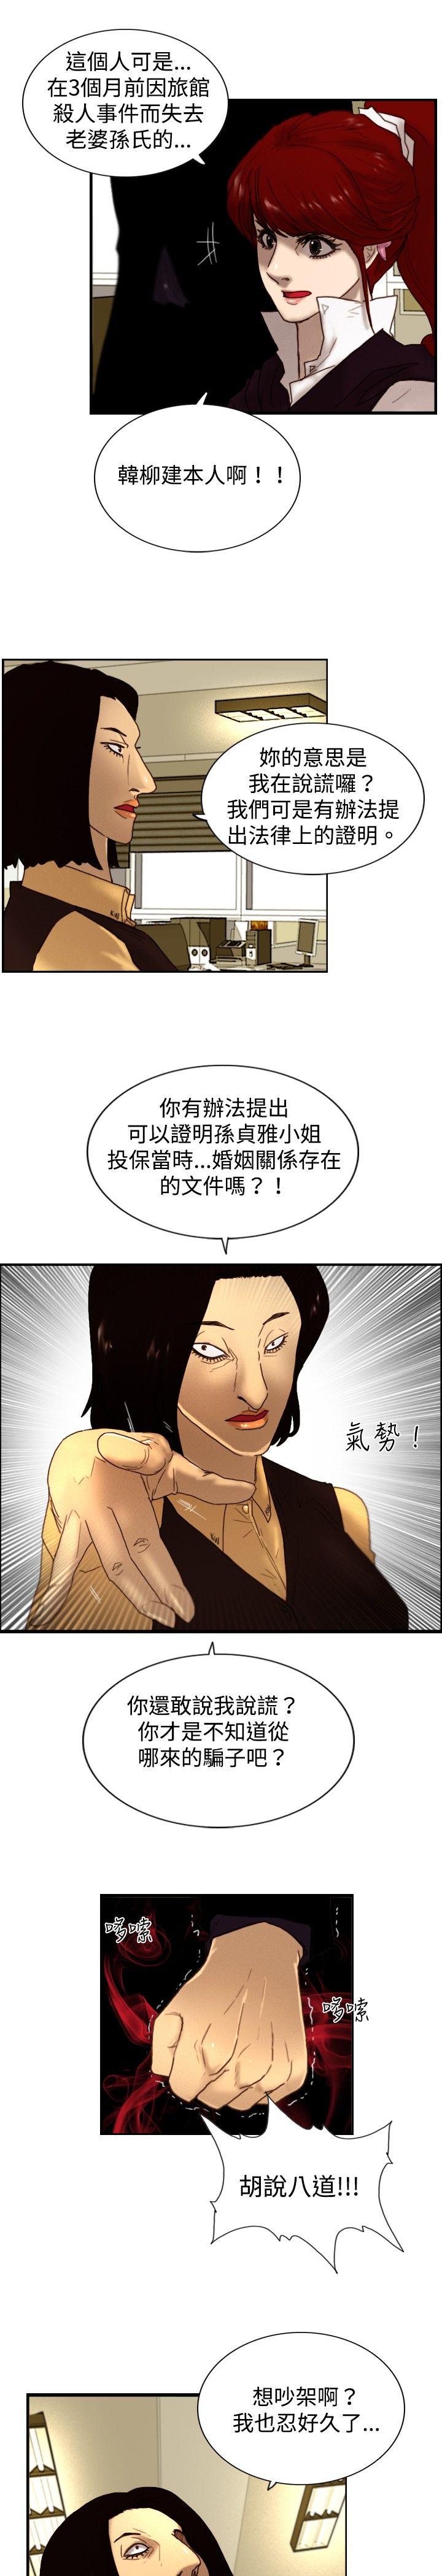 韩国污漫画 覺醒(完結) 第7话谎言 17